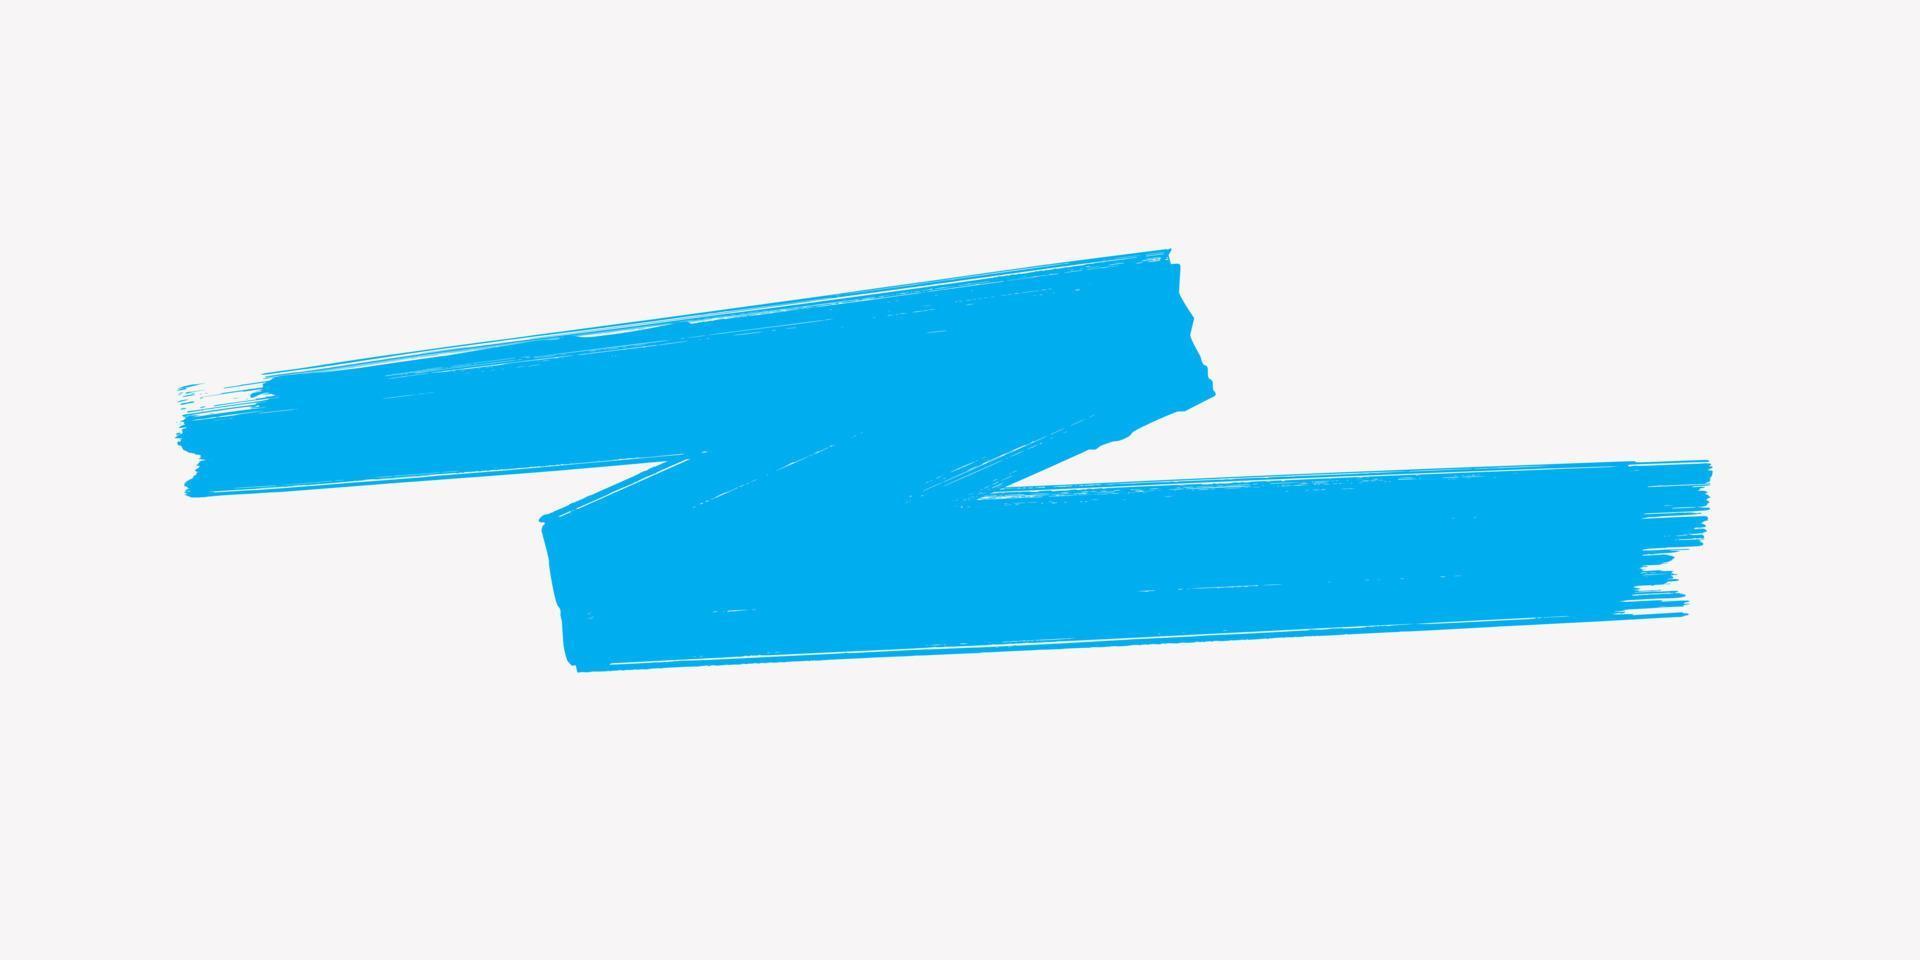 Creative Hand Drawn Blue Brush Stroke, Marker Pen Illustration Isolated on White Background. EPS Vector Design.